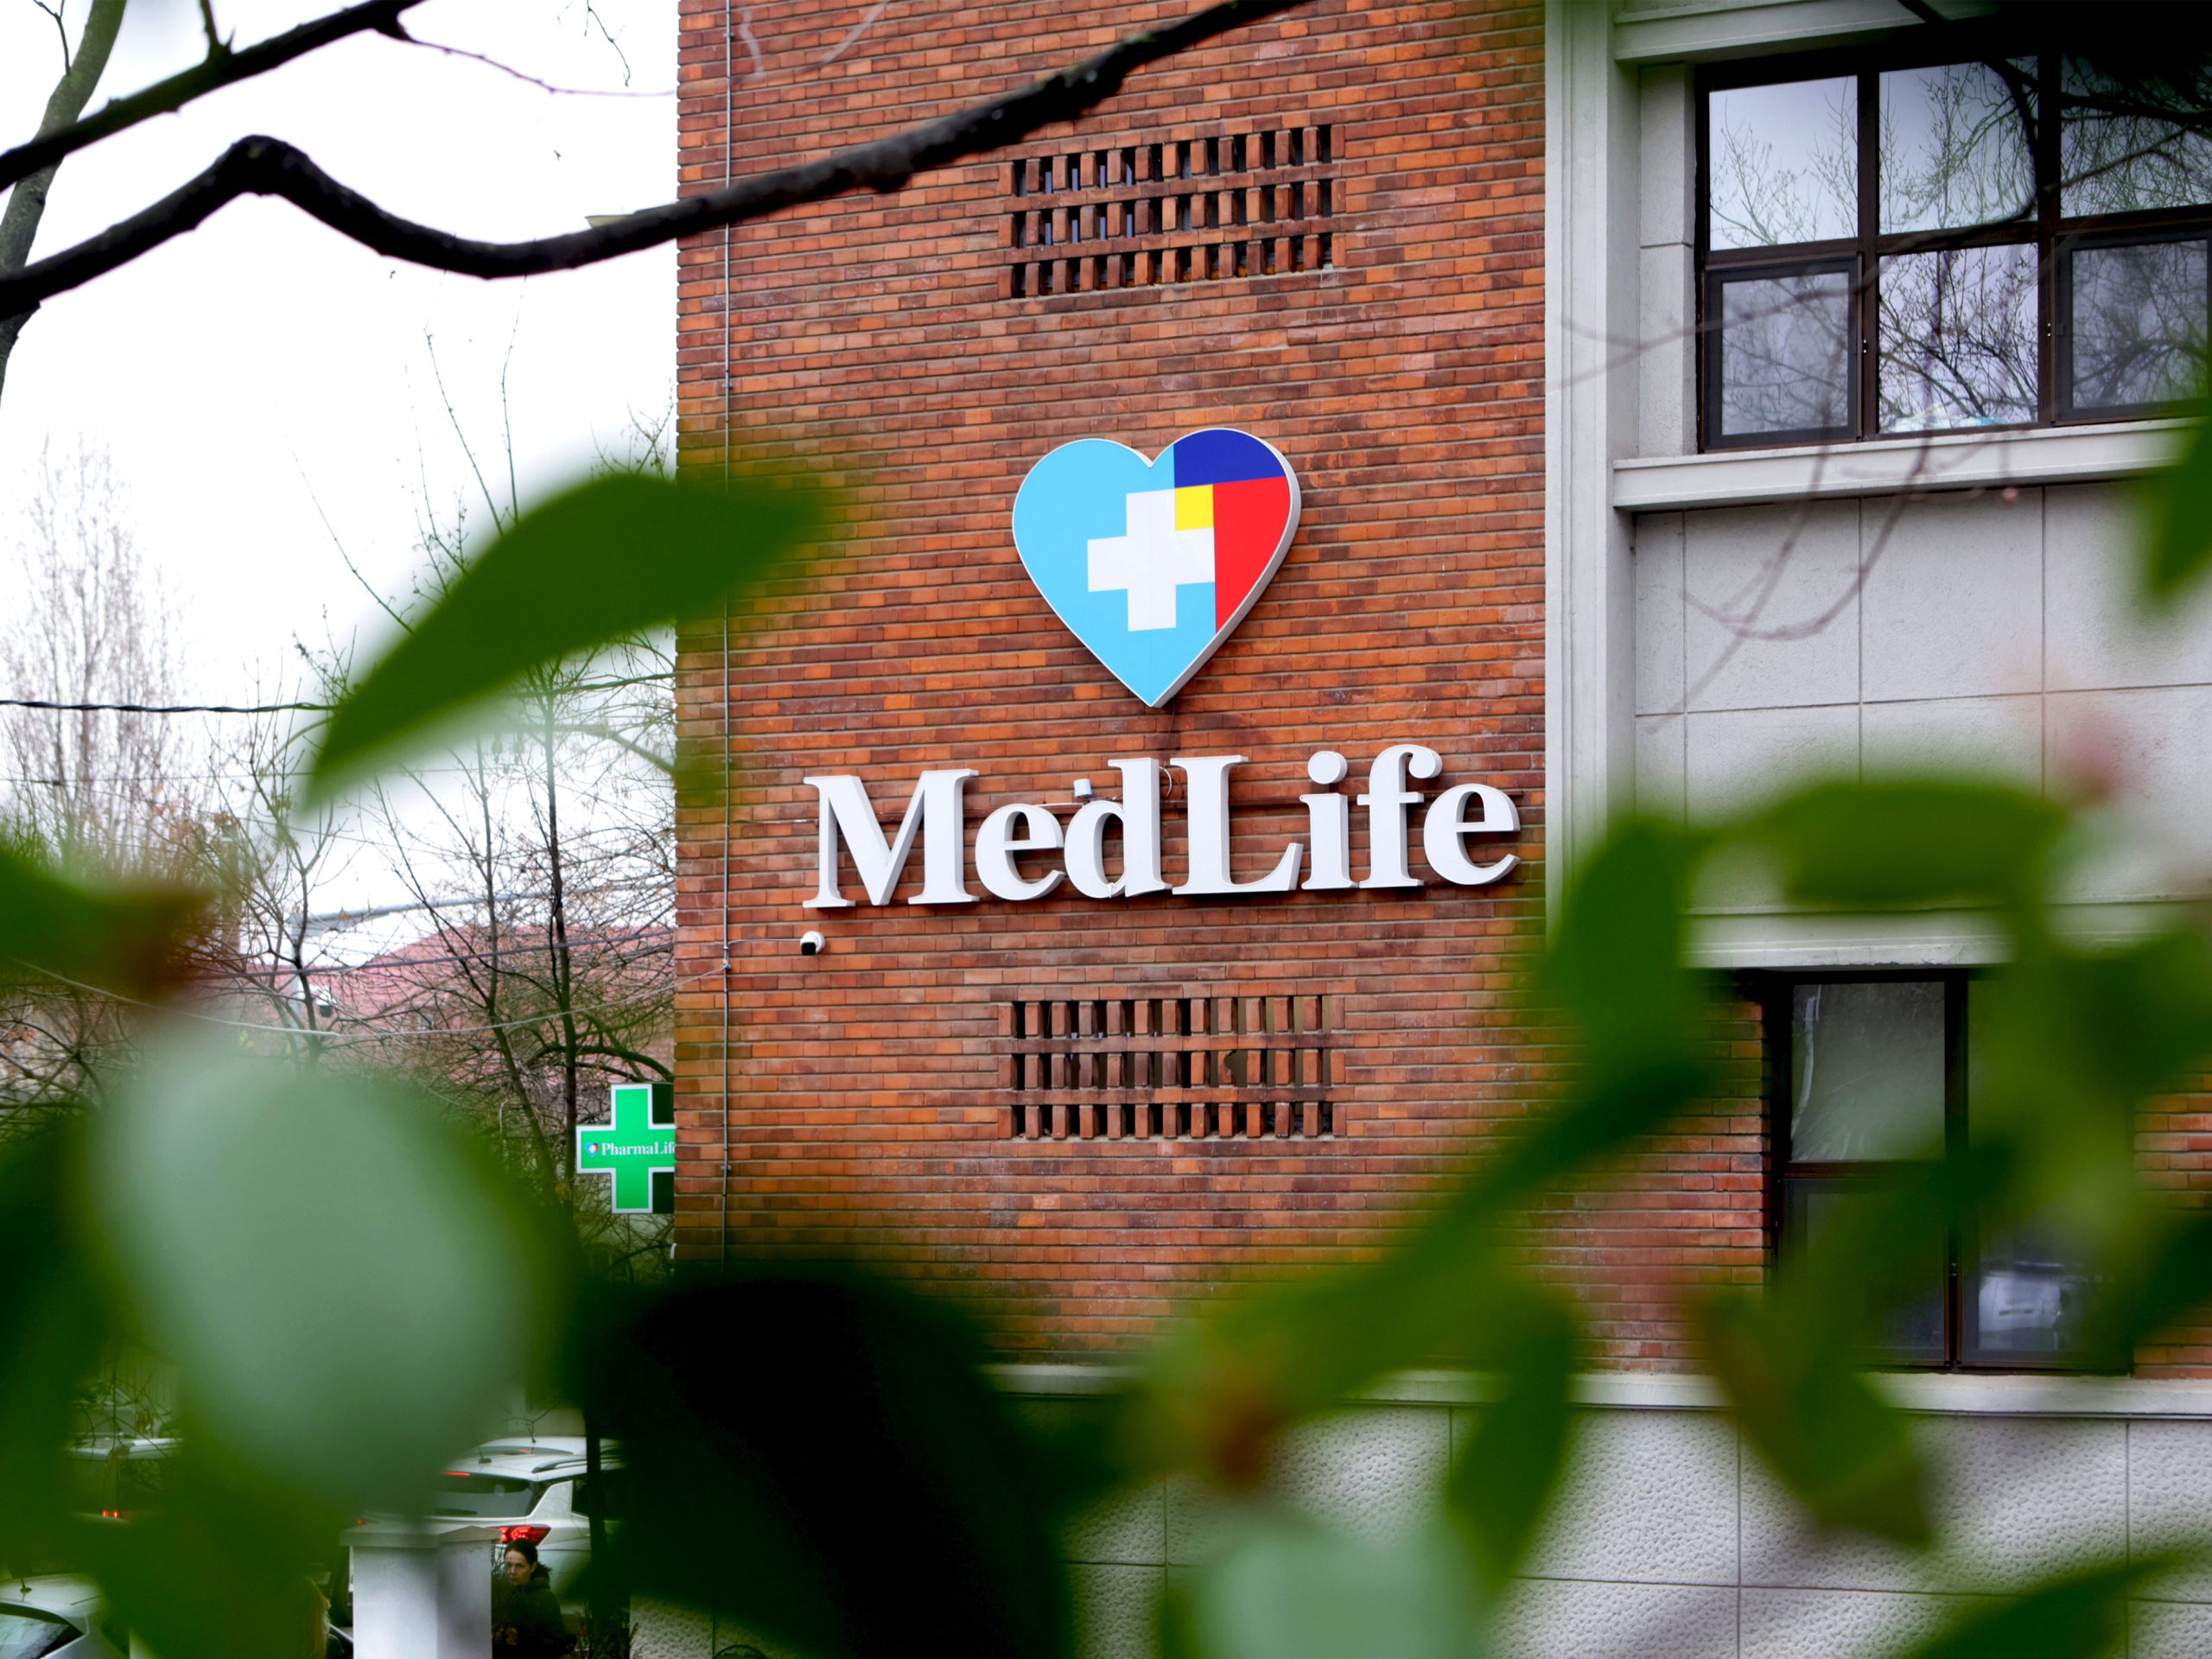 MedLife suplimentează cu 50 de milioane de euro creditul sindicalizat, ajungând la o valoare totală de 268,3 milioane de euro